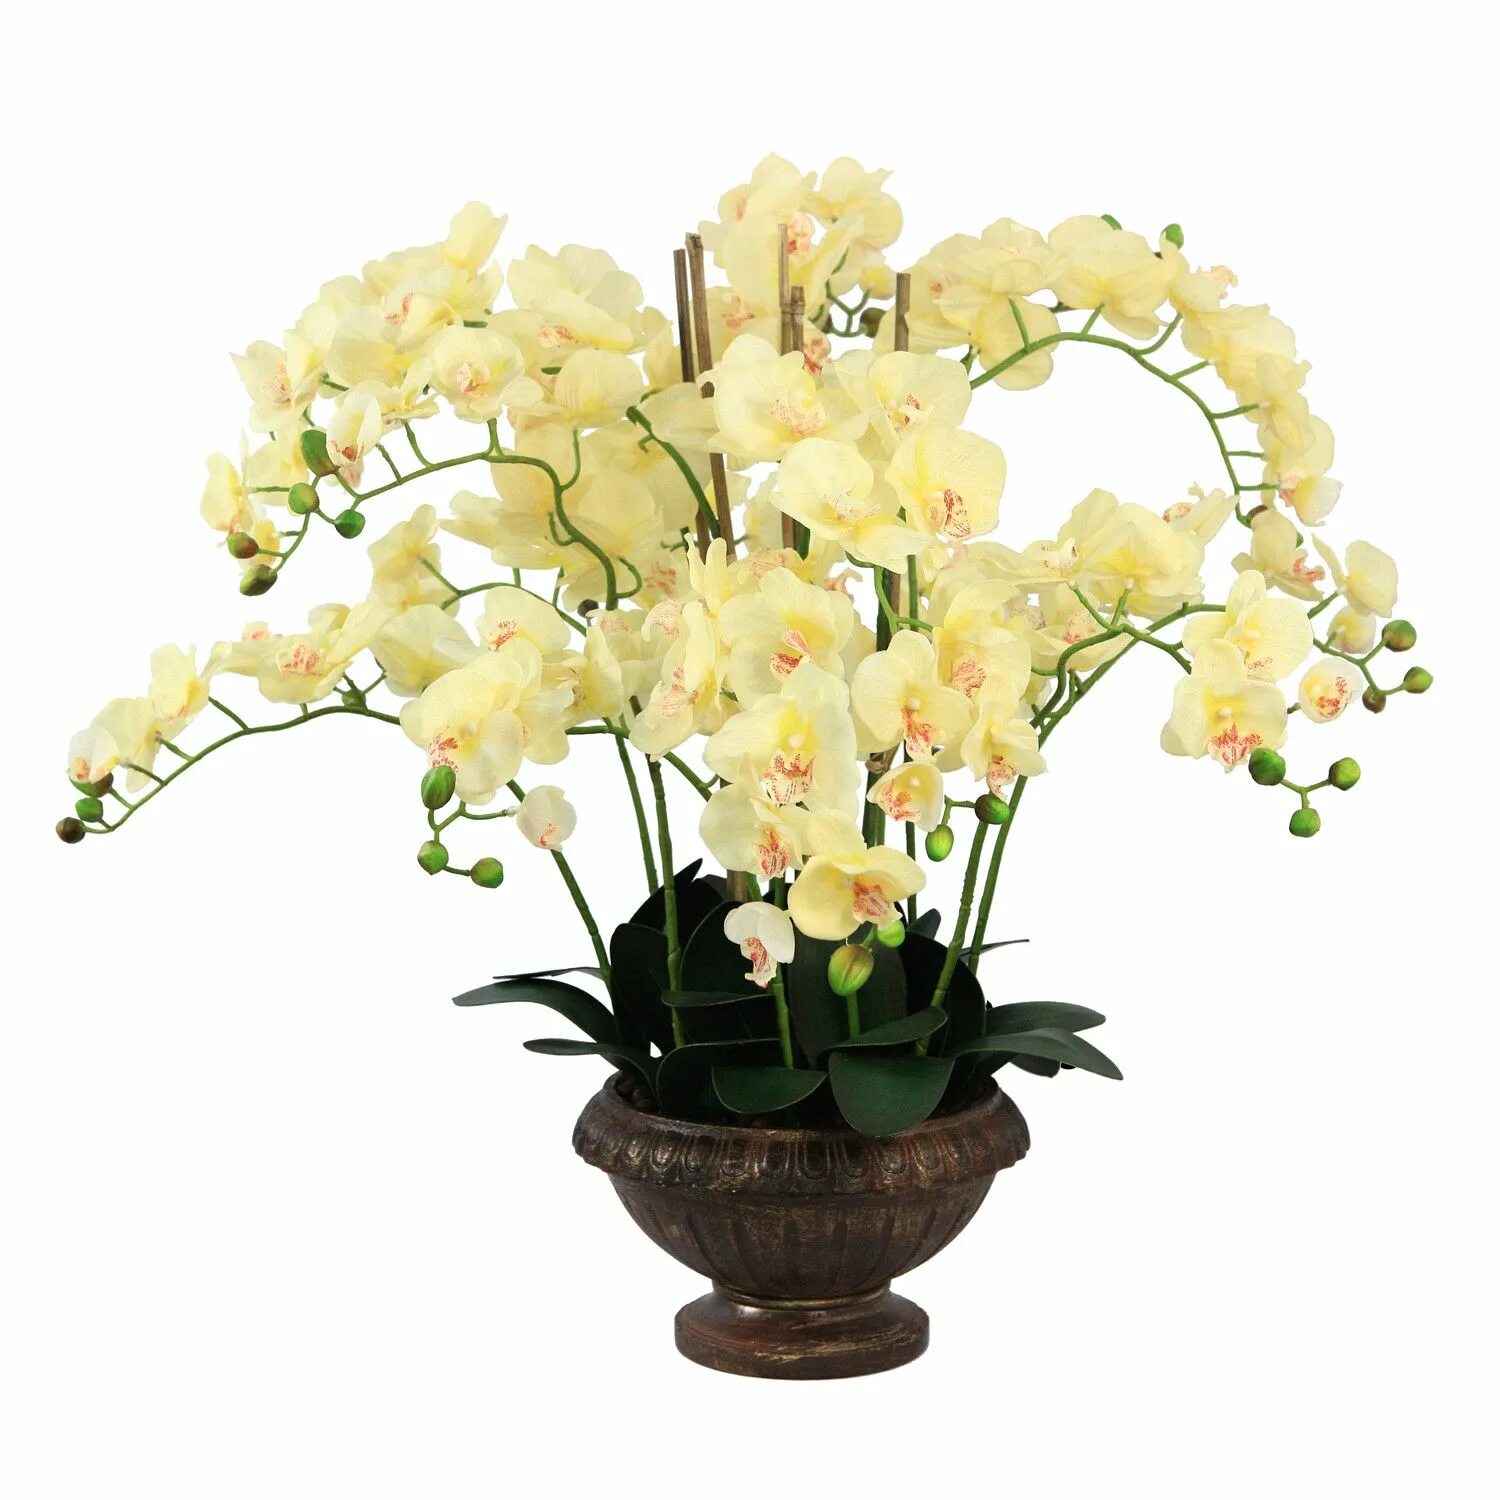 Купить желтую орхидею в горшке. Орхидея Дендробиум. Орхидея Дендробиум фаленопсис. Орхидея Дендробиум Икебана. Орхидея Дендробиум светло-желтая.